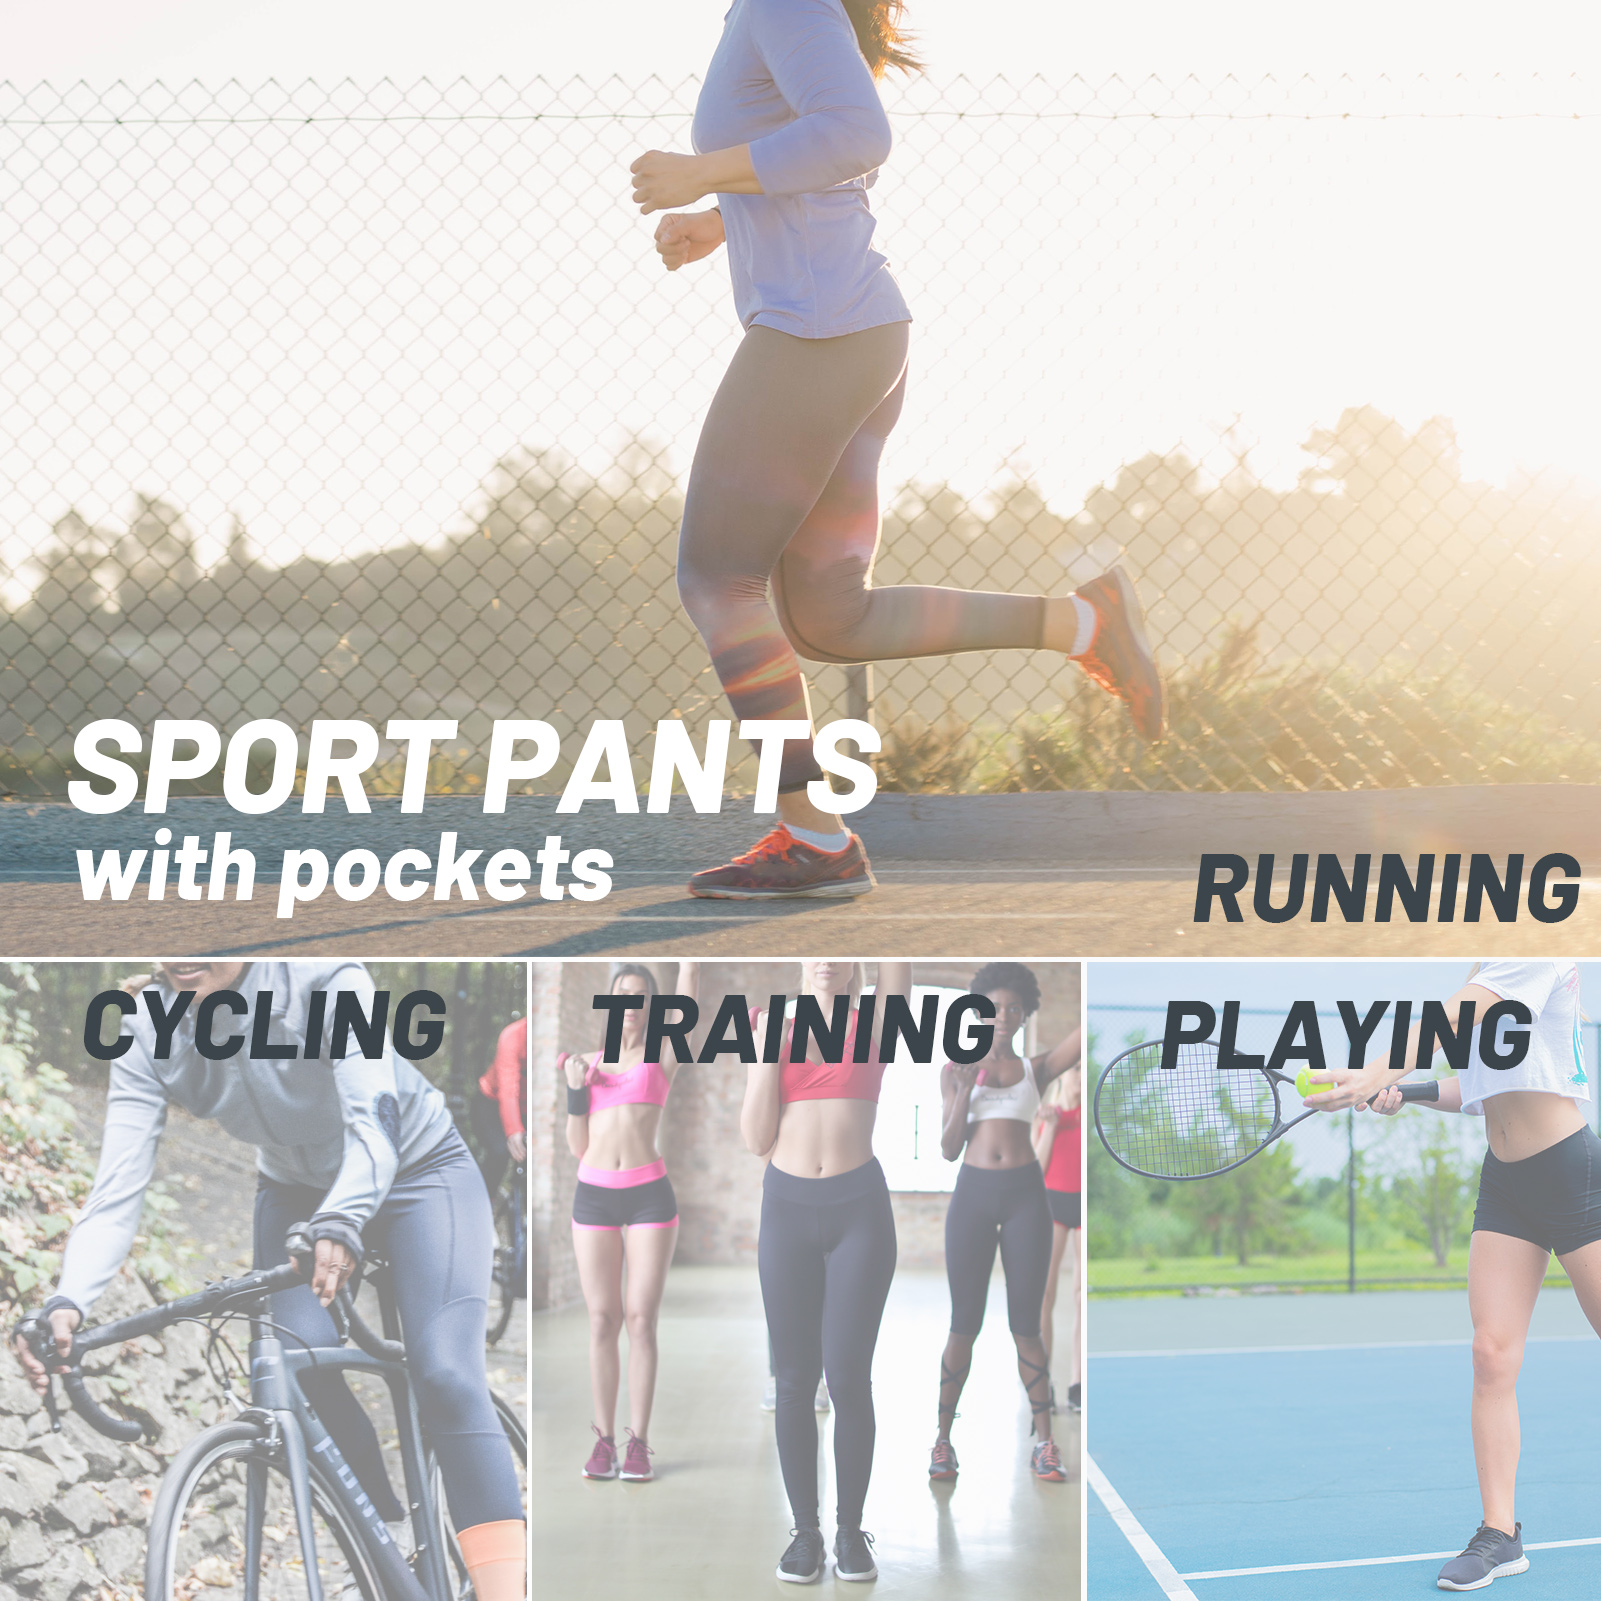 Quần jogger chạy bộ nữ với túi đàn hồi co dãn thoải mái cho việc tập luyện, chạy bộ